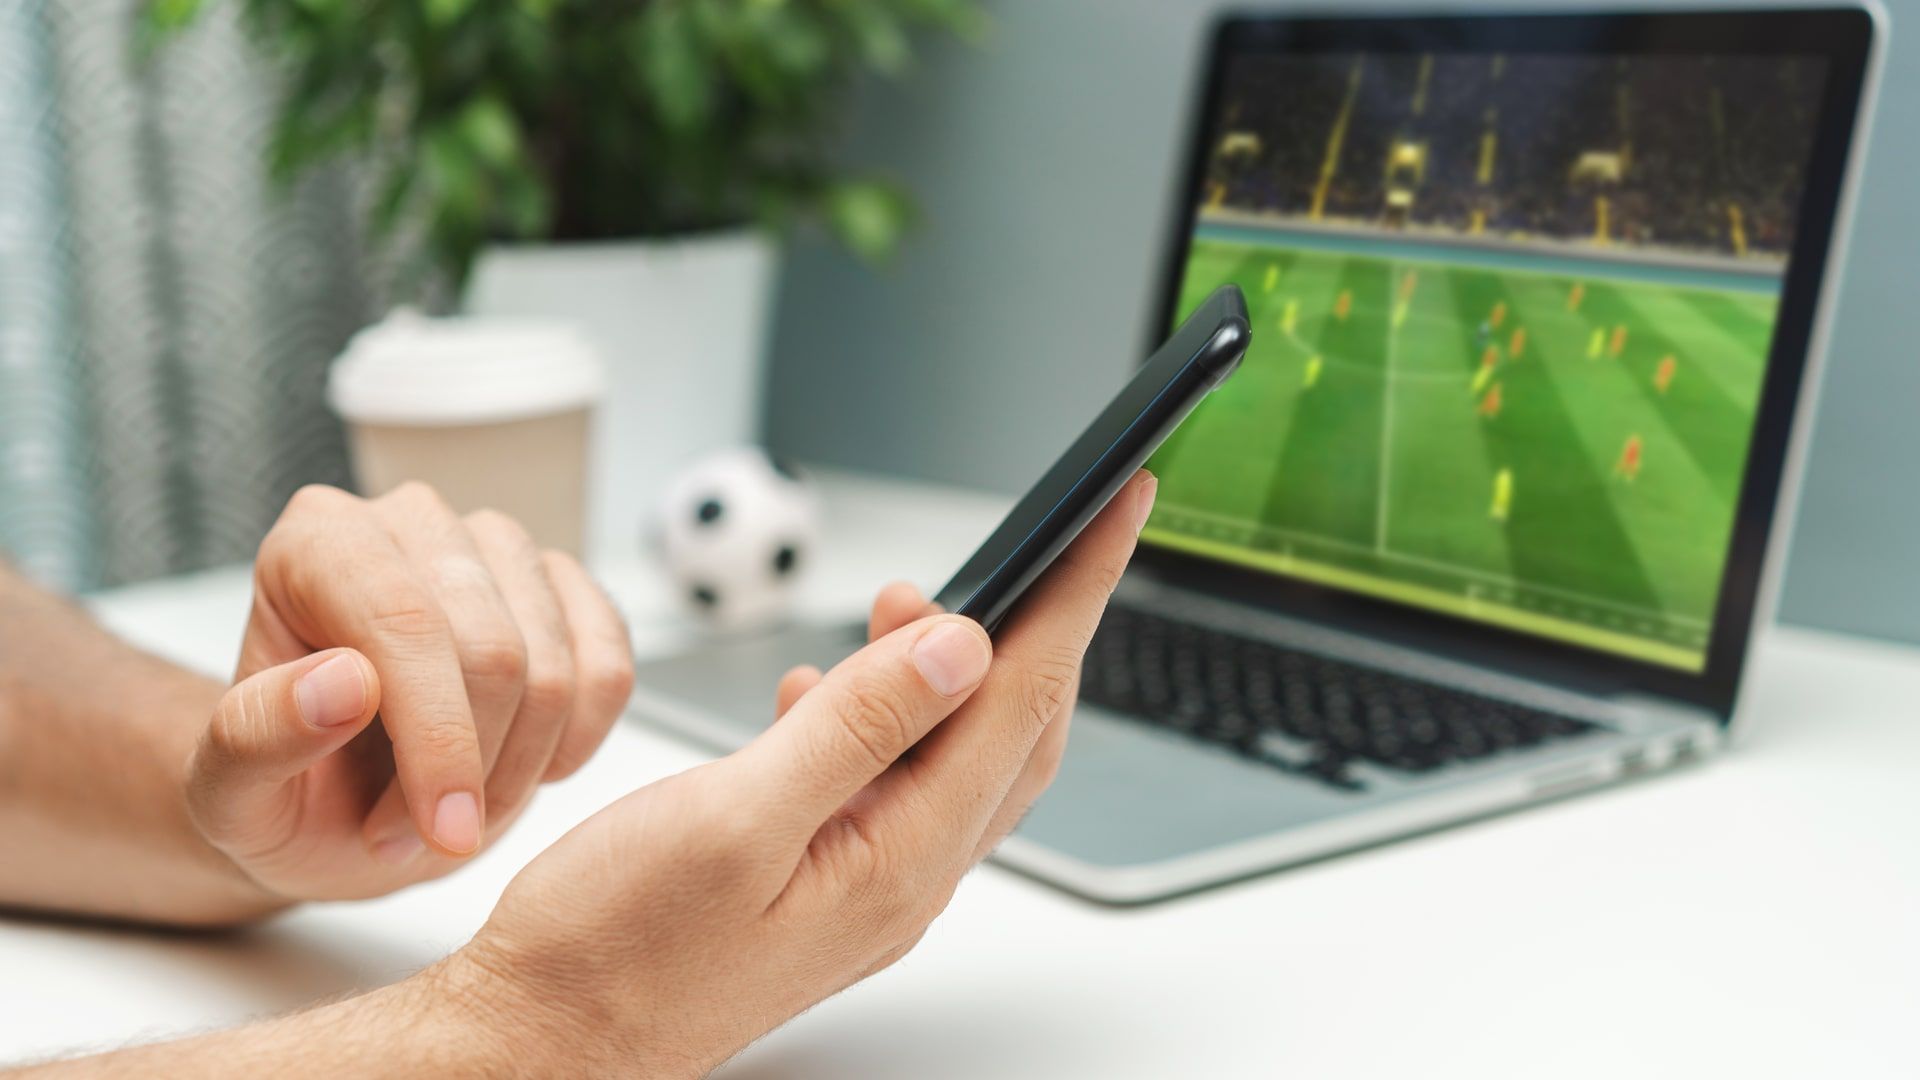 Futebol ao vivo no celular: apps para assistir jogos